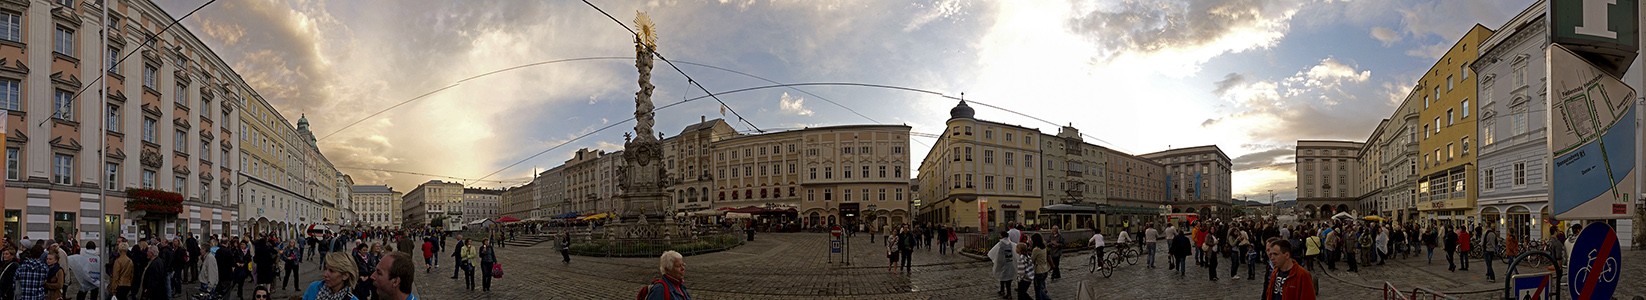 Linz Altstadtviertel: Hauptplatz mit der Dreifaltigkeitssäule